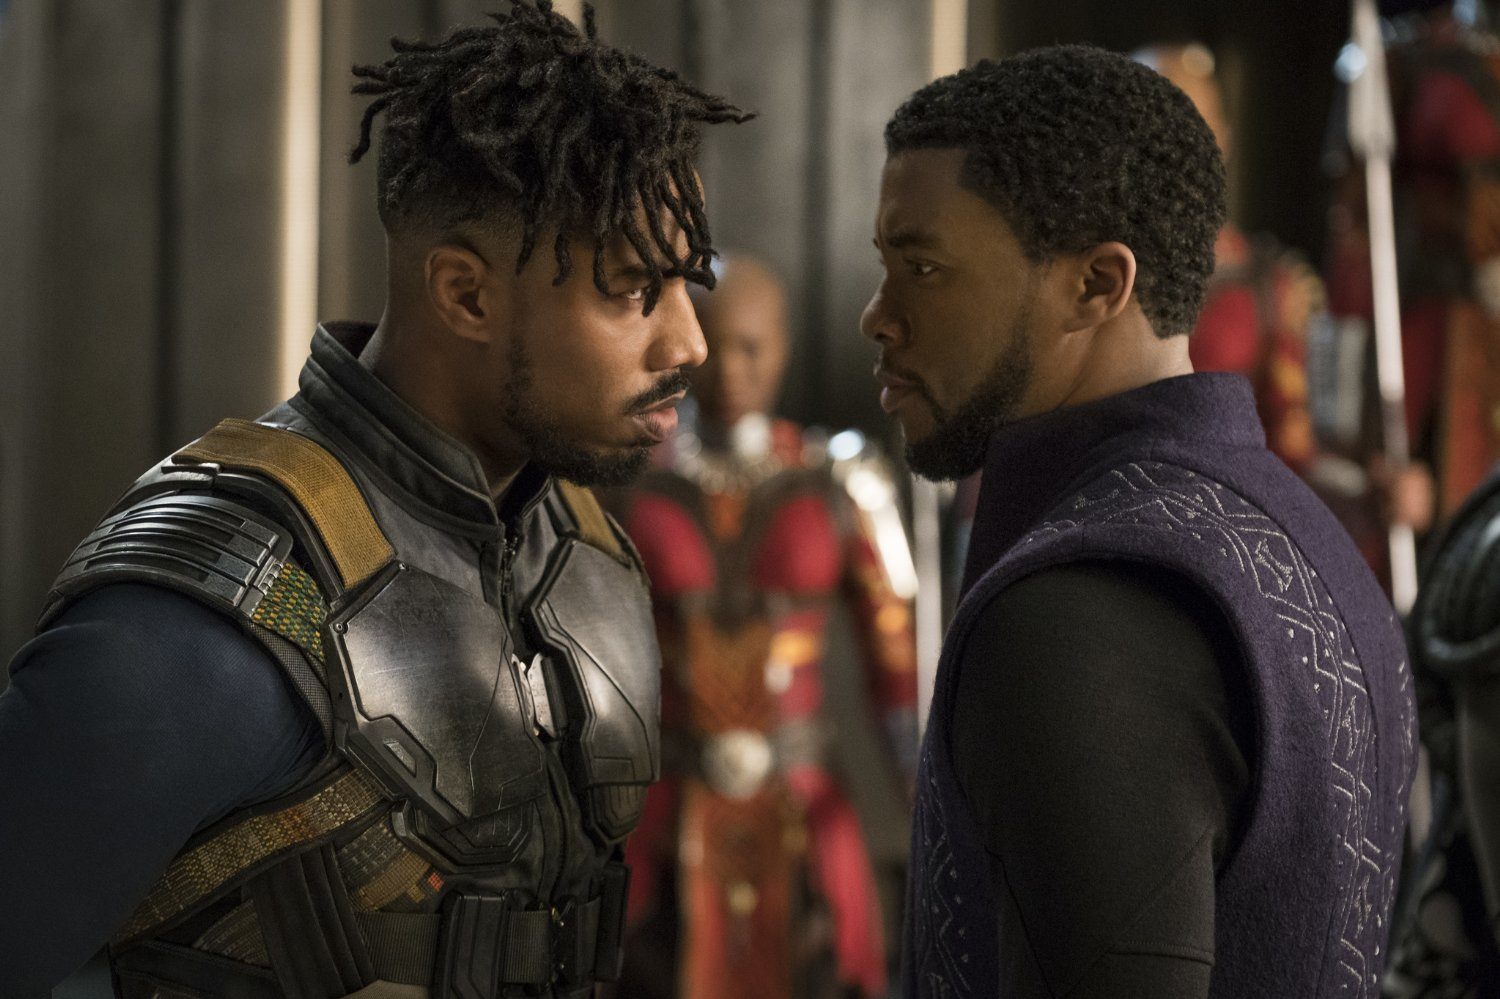 Michael B. Jordan as Killmonger stares down Chadwick Boseman as T'Challa in 'Black Panther'.